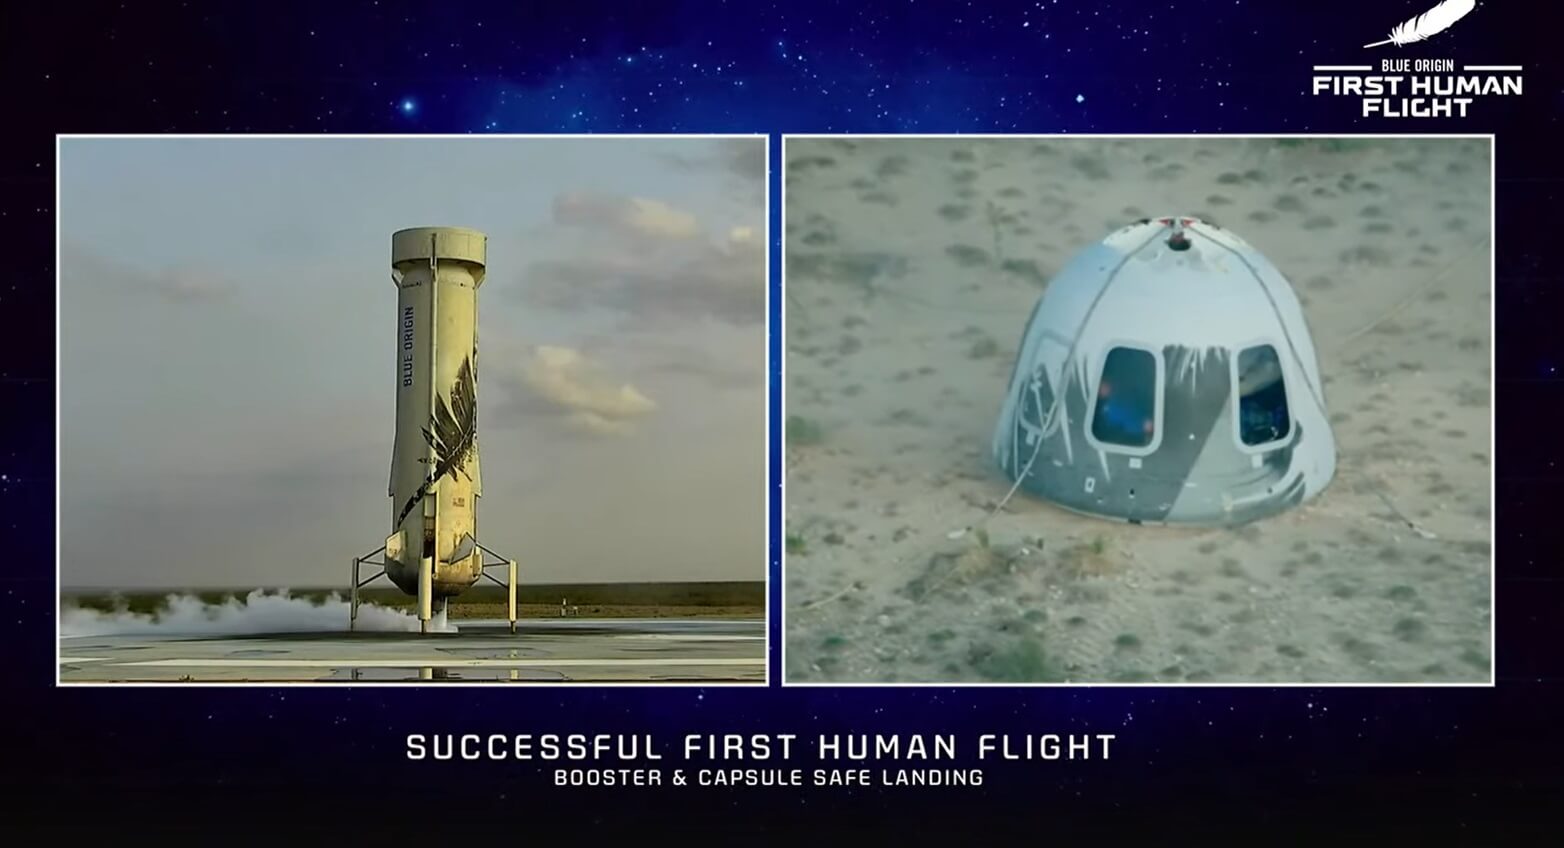 المركبة الفضائية Blue Origin تهبط بسلام بعد إطلاقها الناجح الأول وعلى متنها رواد فضاء من بينهم الرئيس التنفيذي جيف بيزوس، وشقيقه مارك، واثنين من رواد الفضاء.